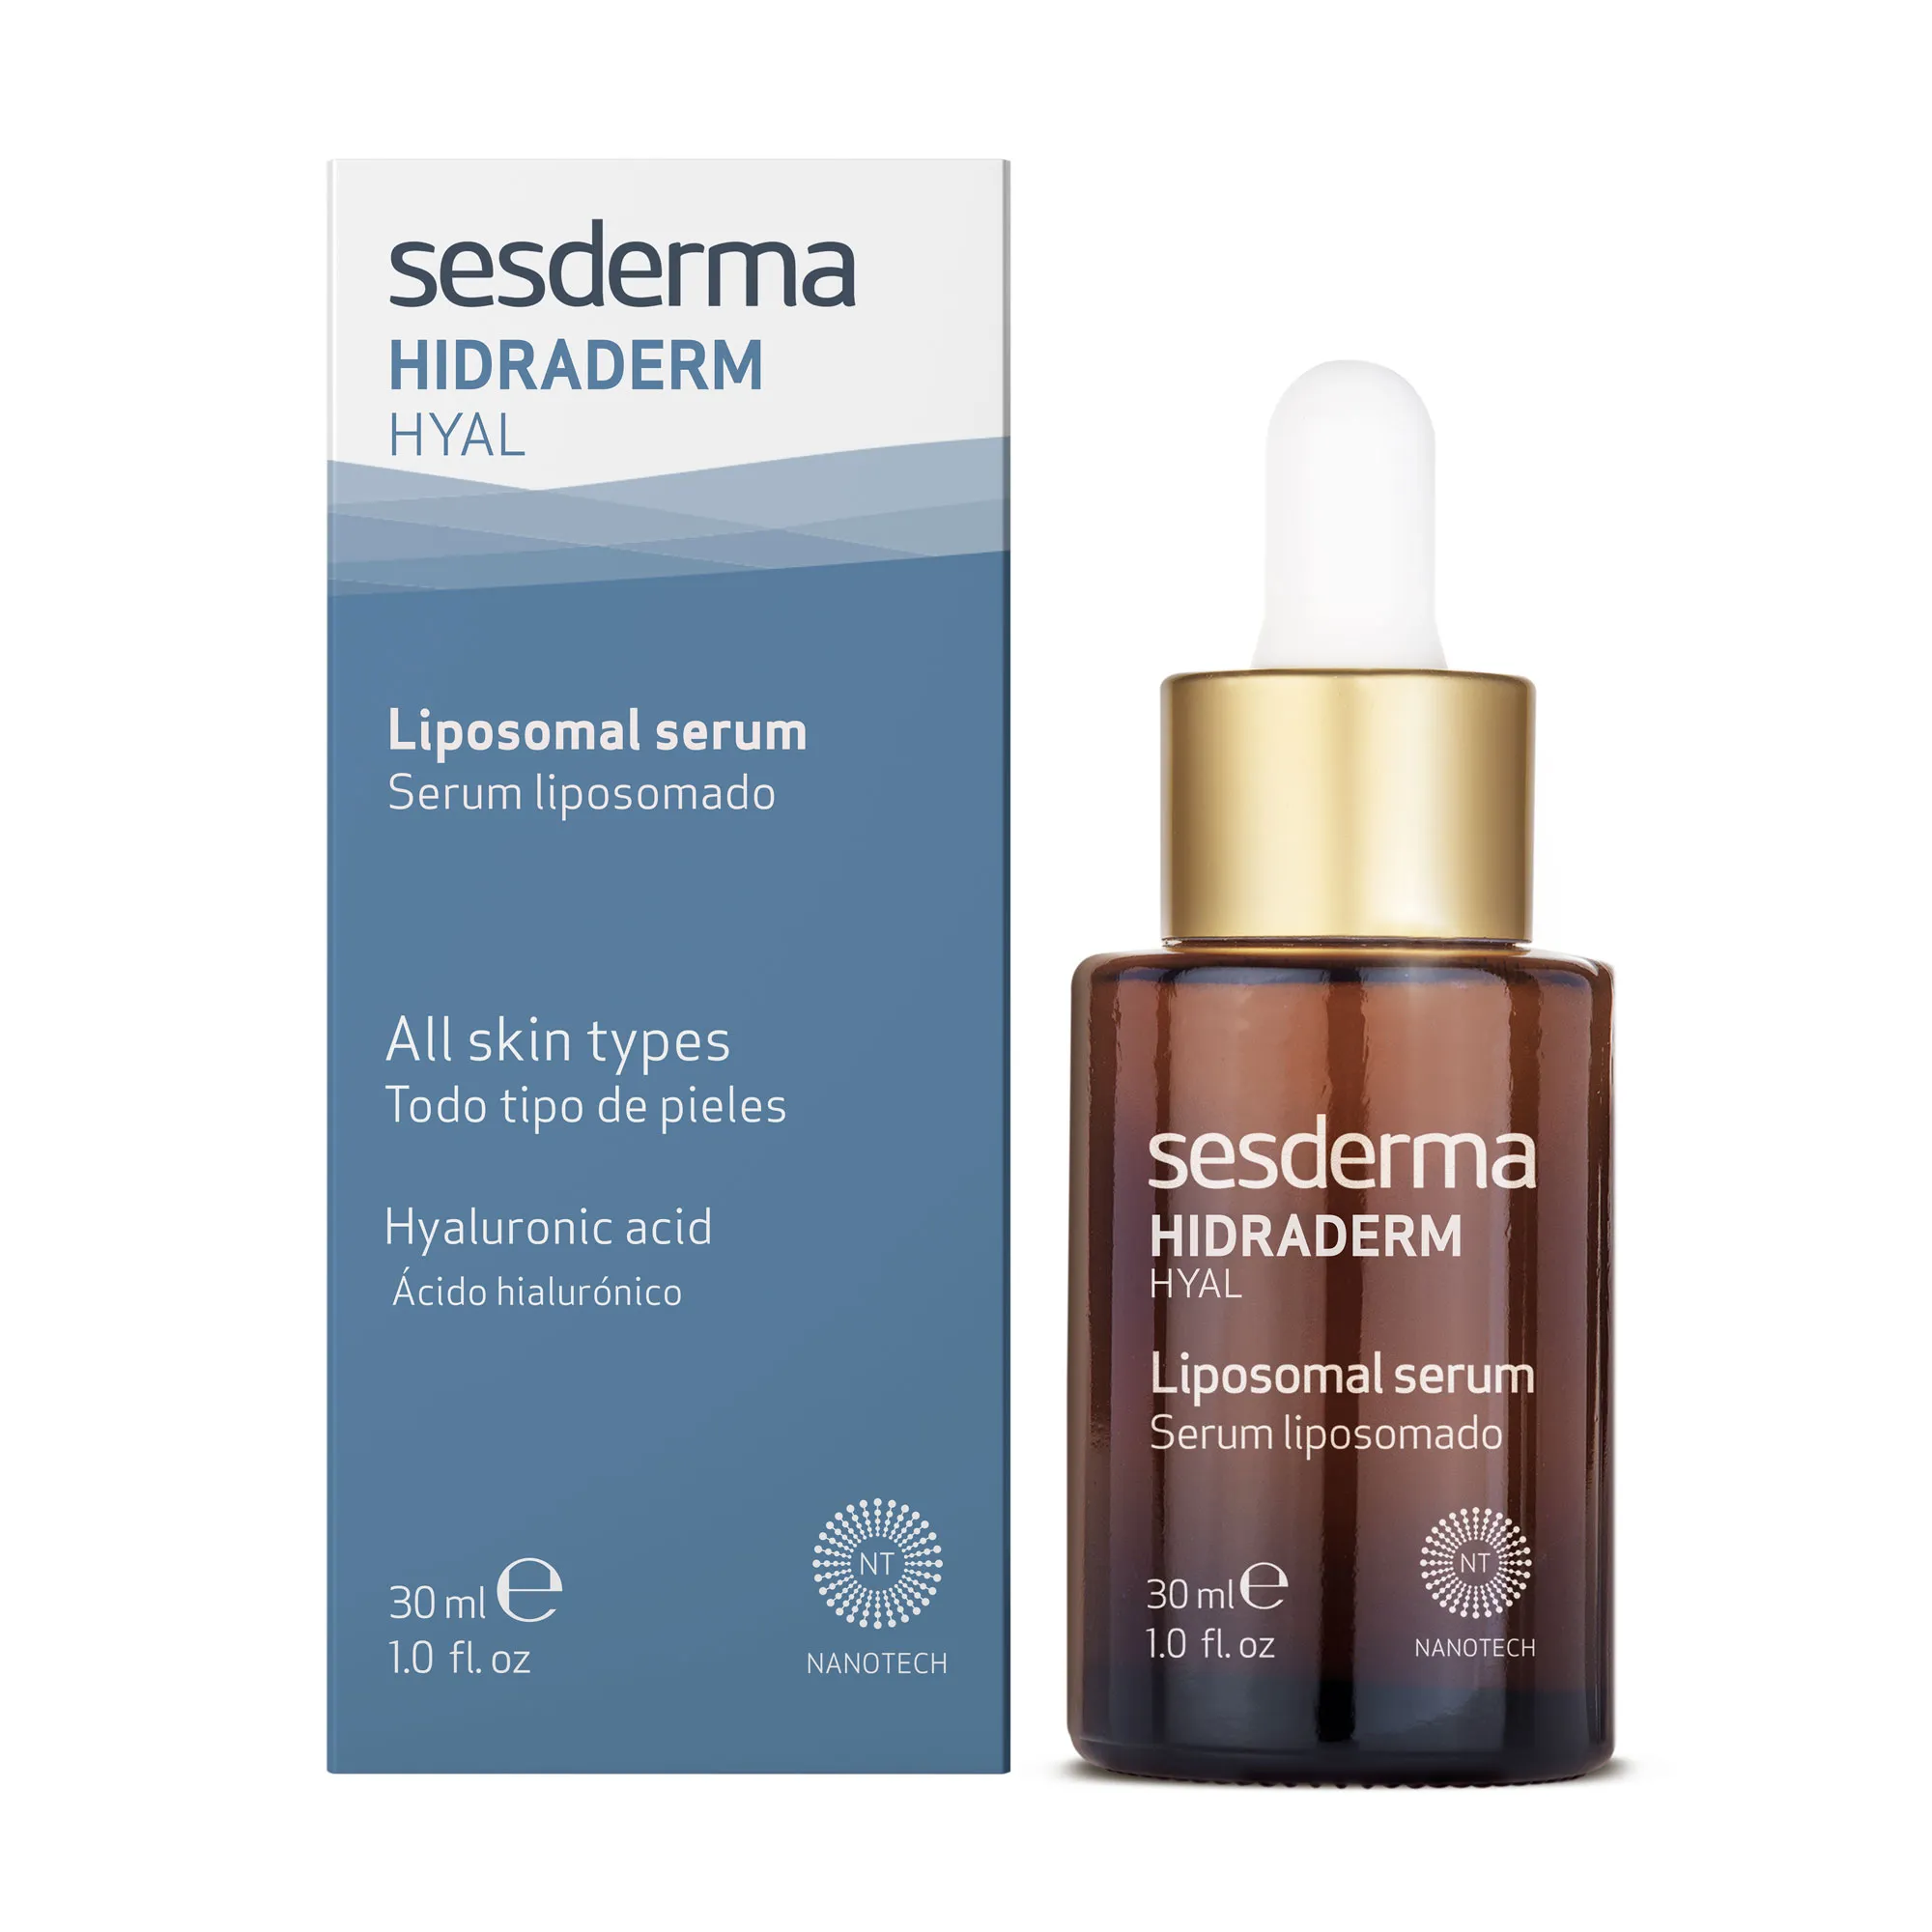 SESDERMA HIDRADERM HYAL Liposomal serum 30ml - 1